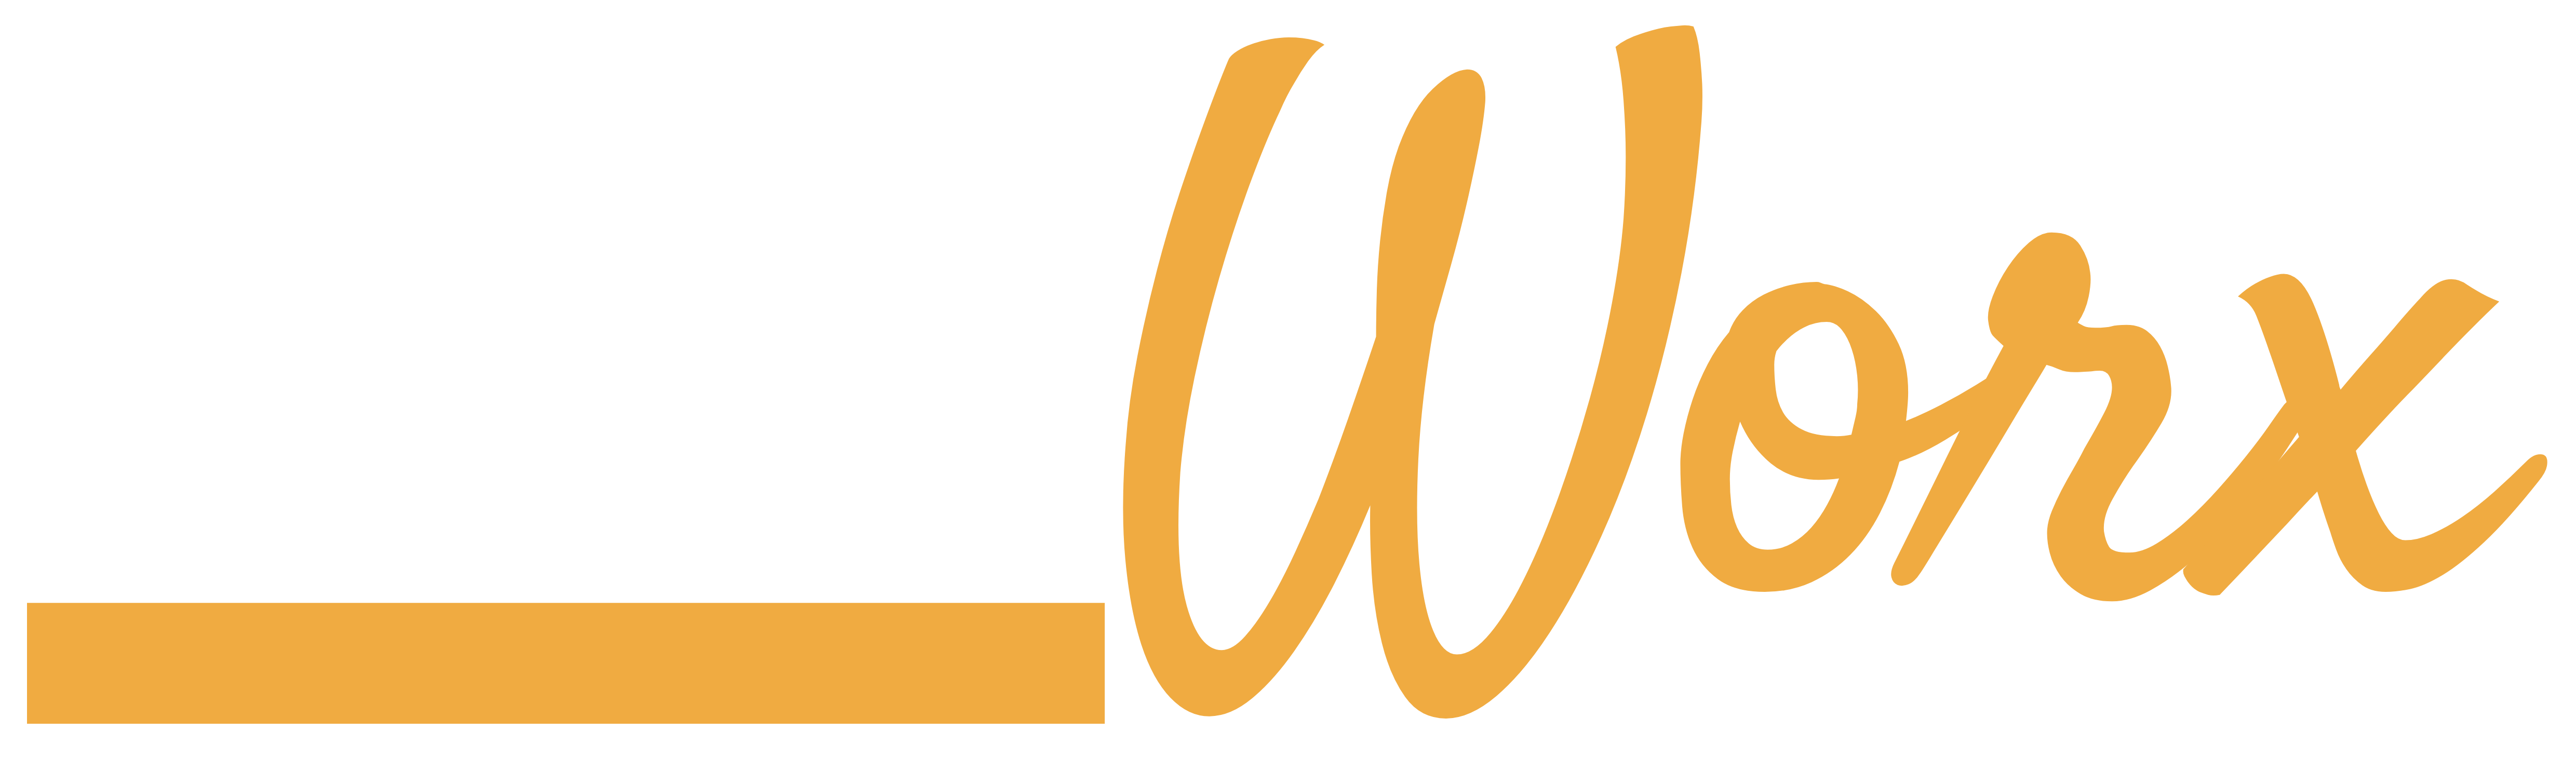 Baseworx-logo